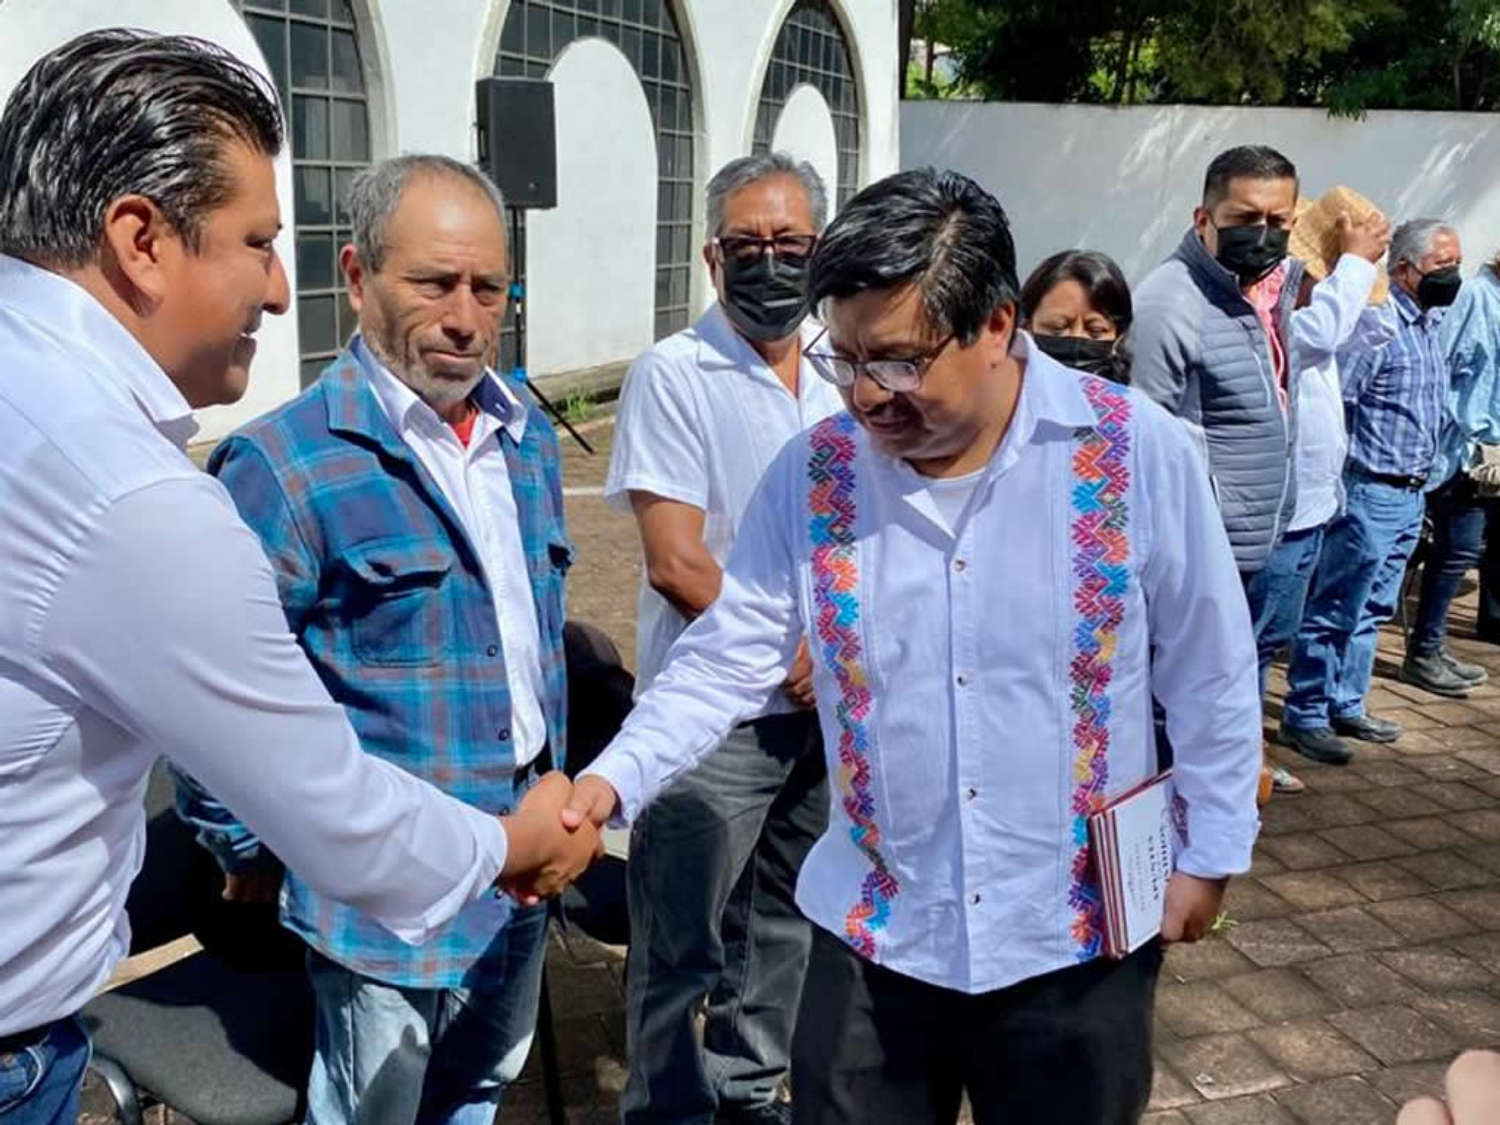 Gobierno de México y Autoridades Indígenas inician construcción del “Camino de Benito Juárez”, como un homenaje cívico a la memoria del Benemérito de las Américas